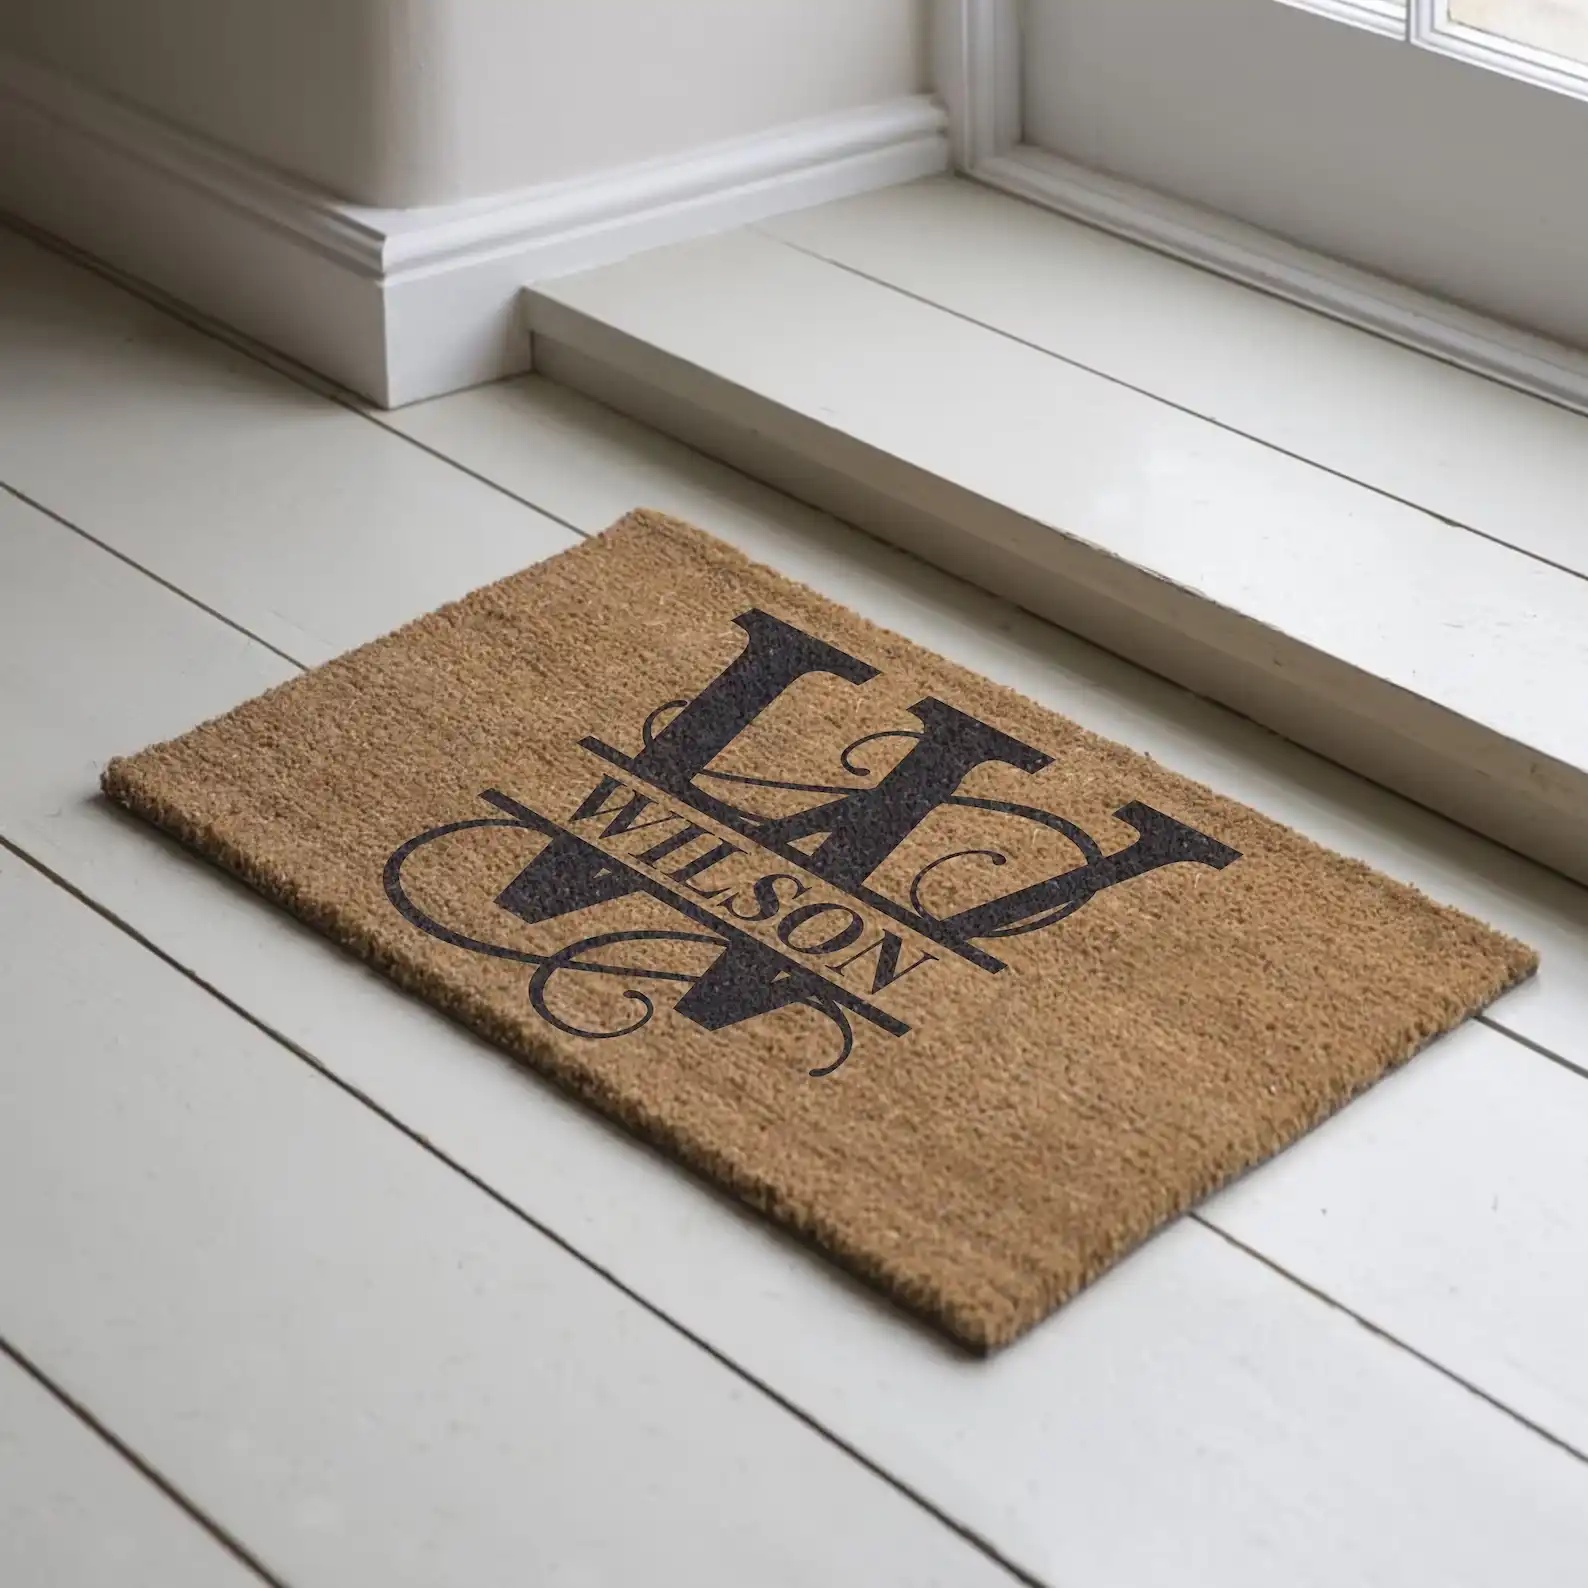 Personalized Doormat